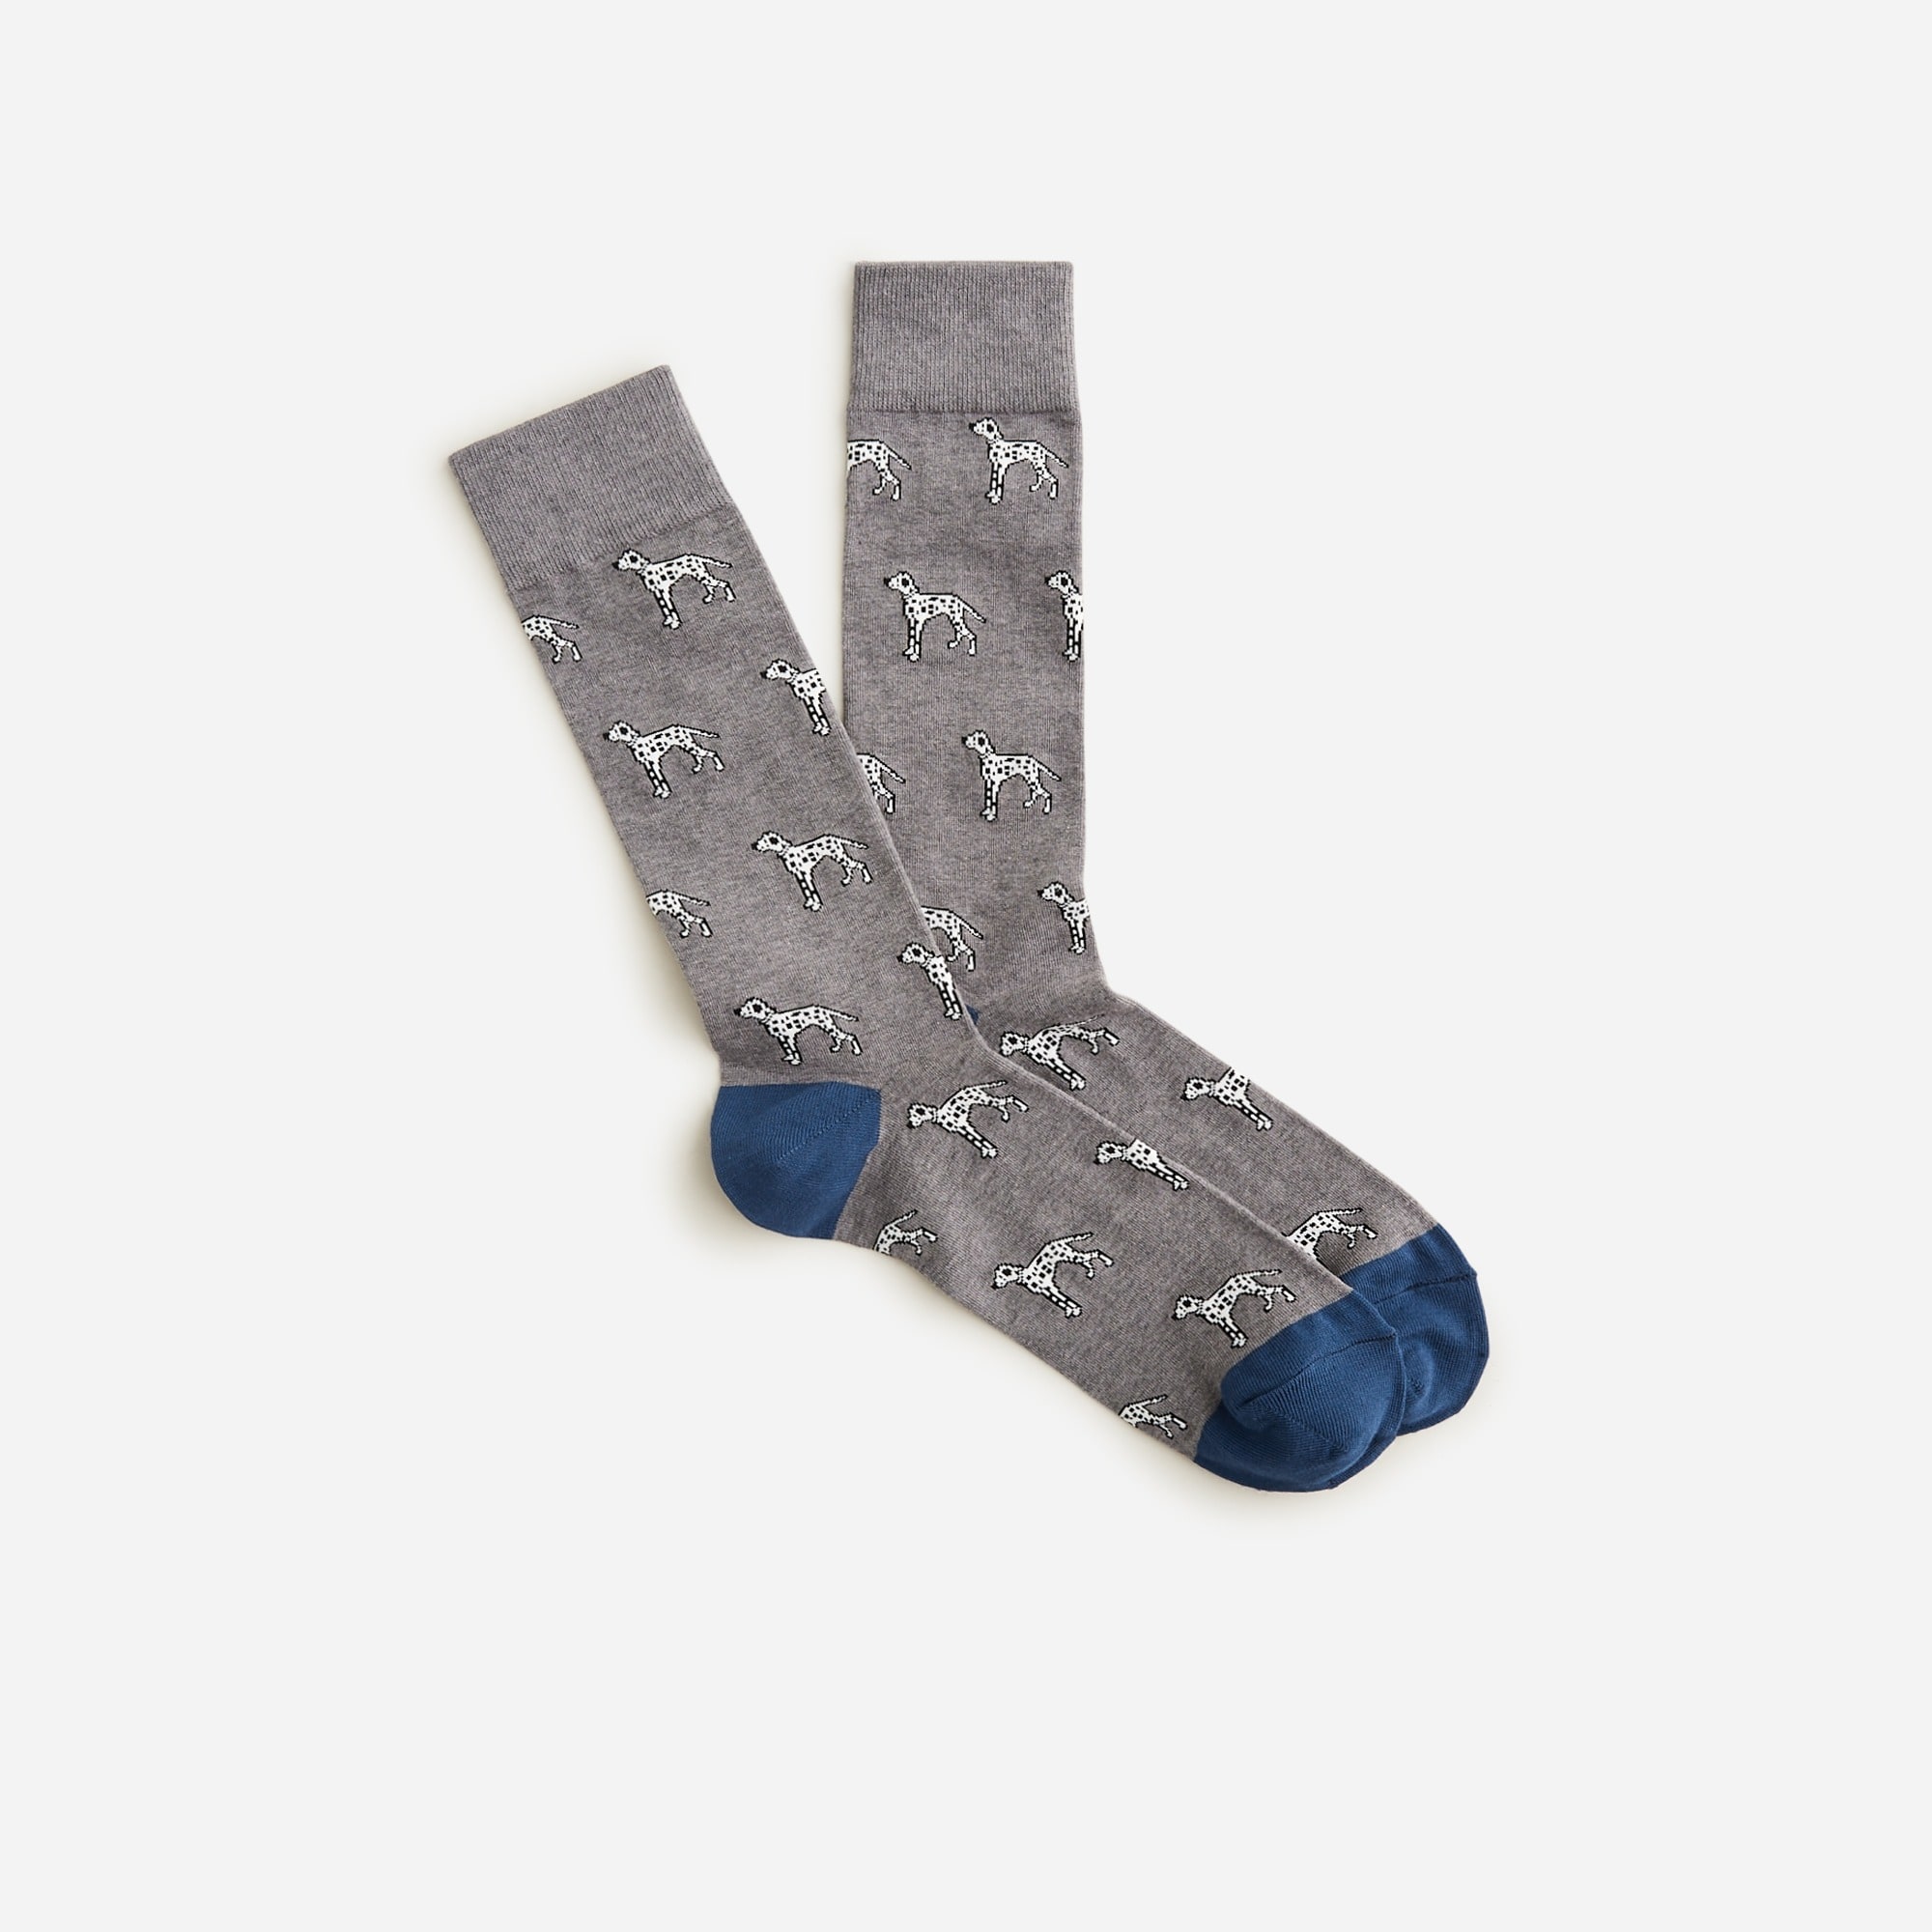 Jcrew Critter socks